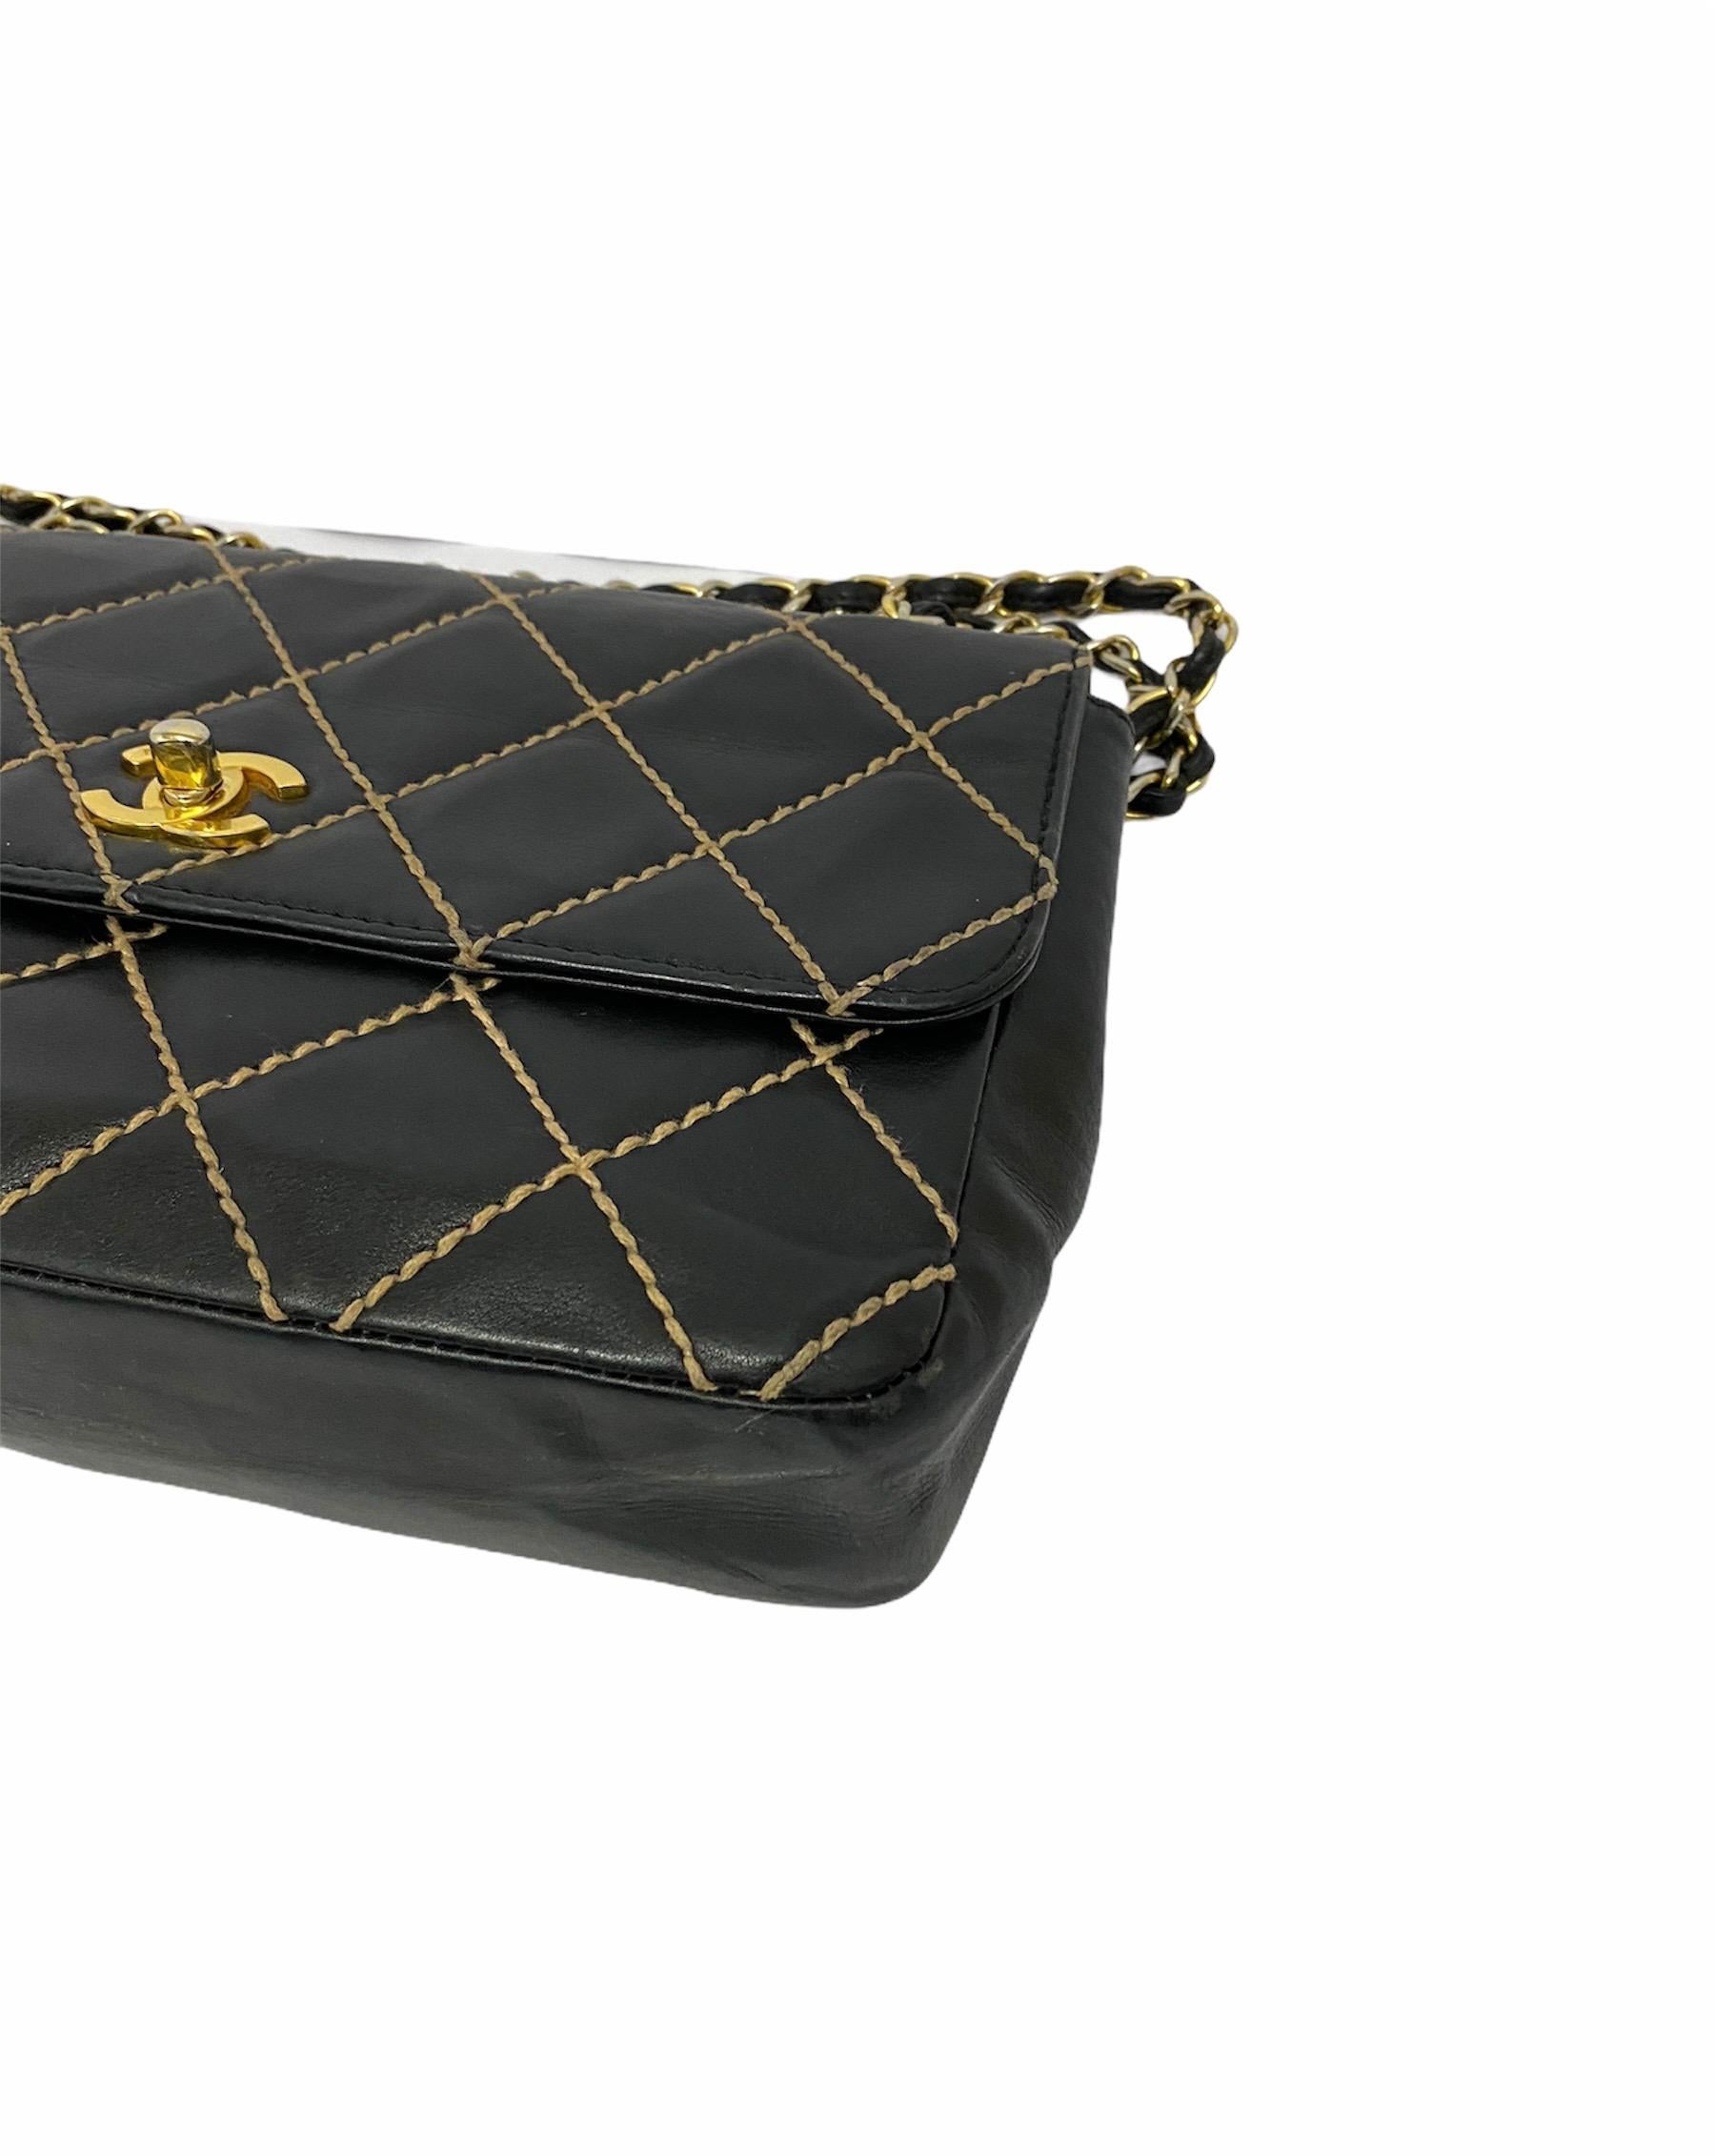 Chanel Black Leather Bag 3